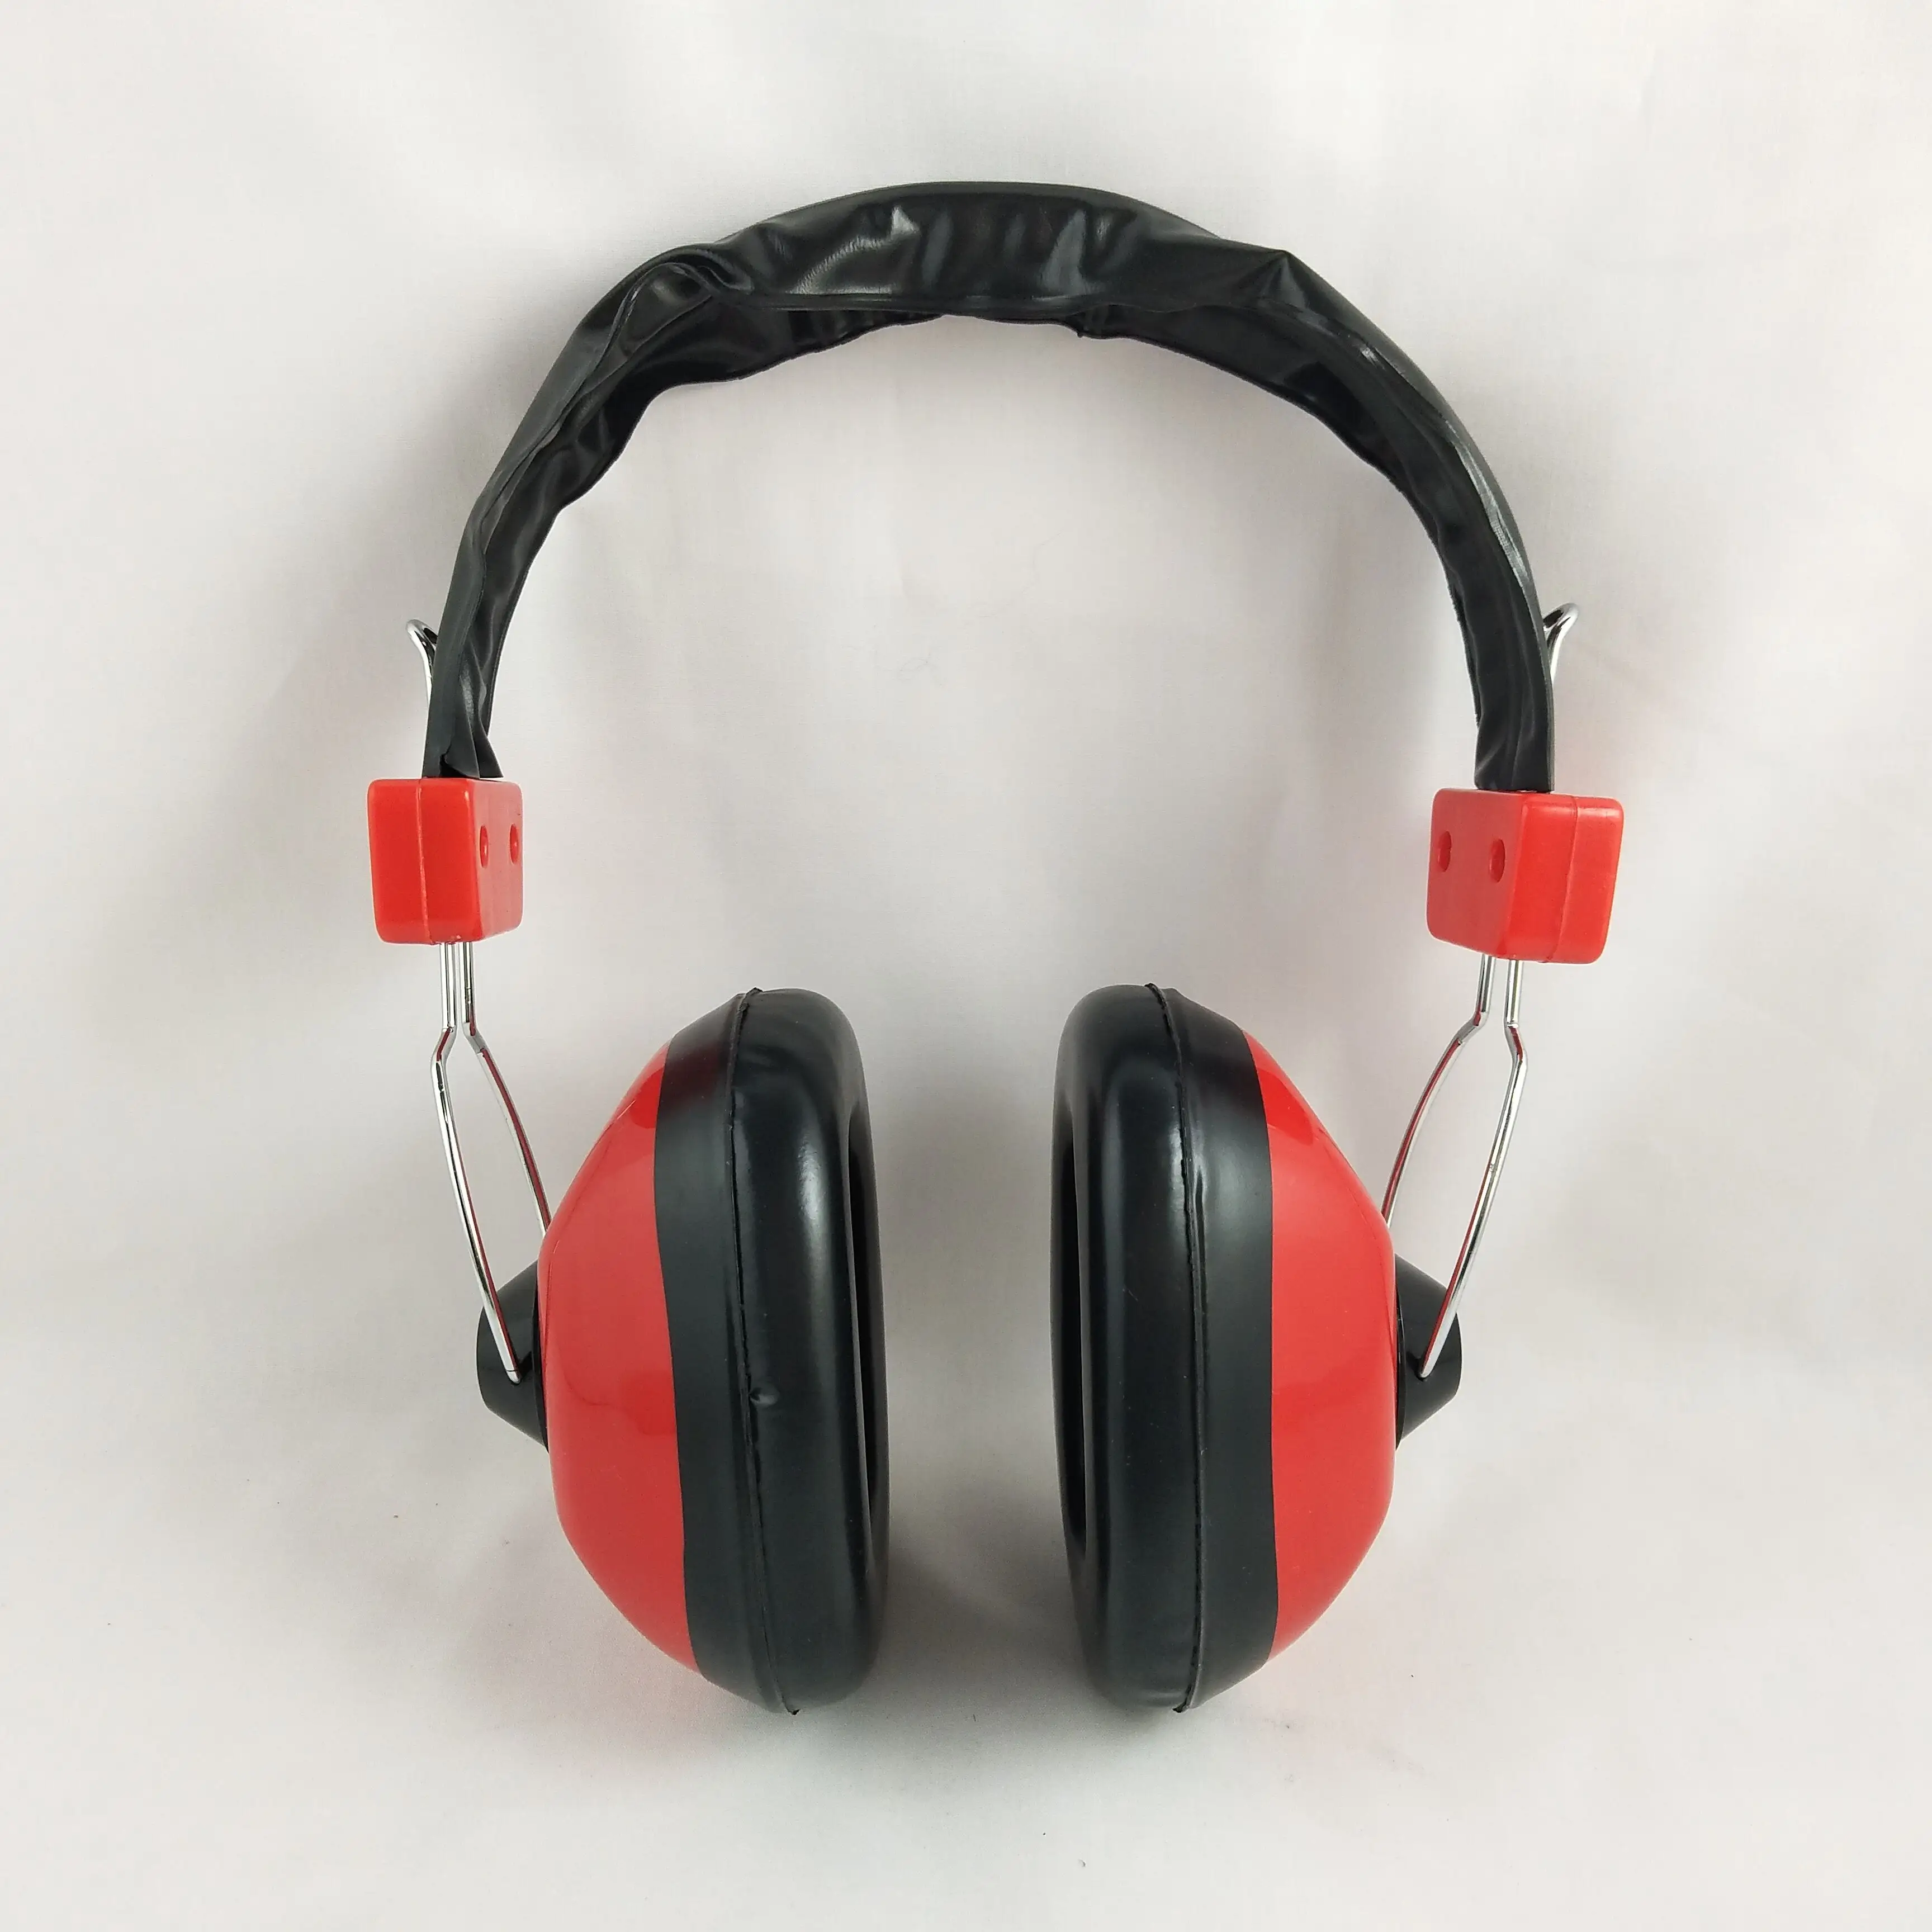 Tir chasse audition insonorisée protection industrielle Anti-bruit réduction cache-oreilles défenseurs sécurité cache-oreilles